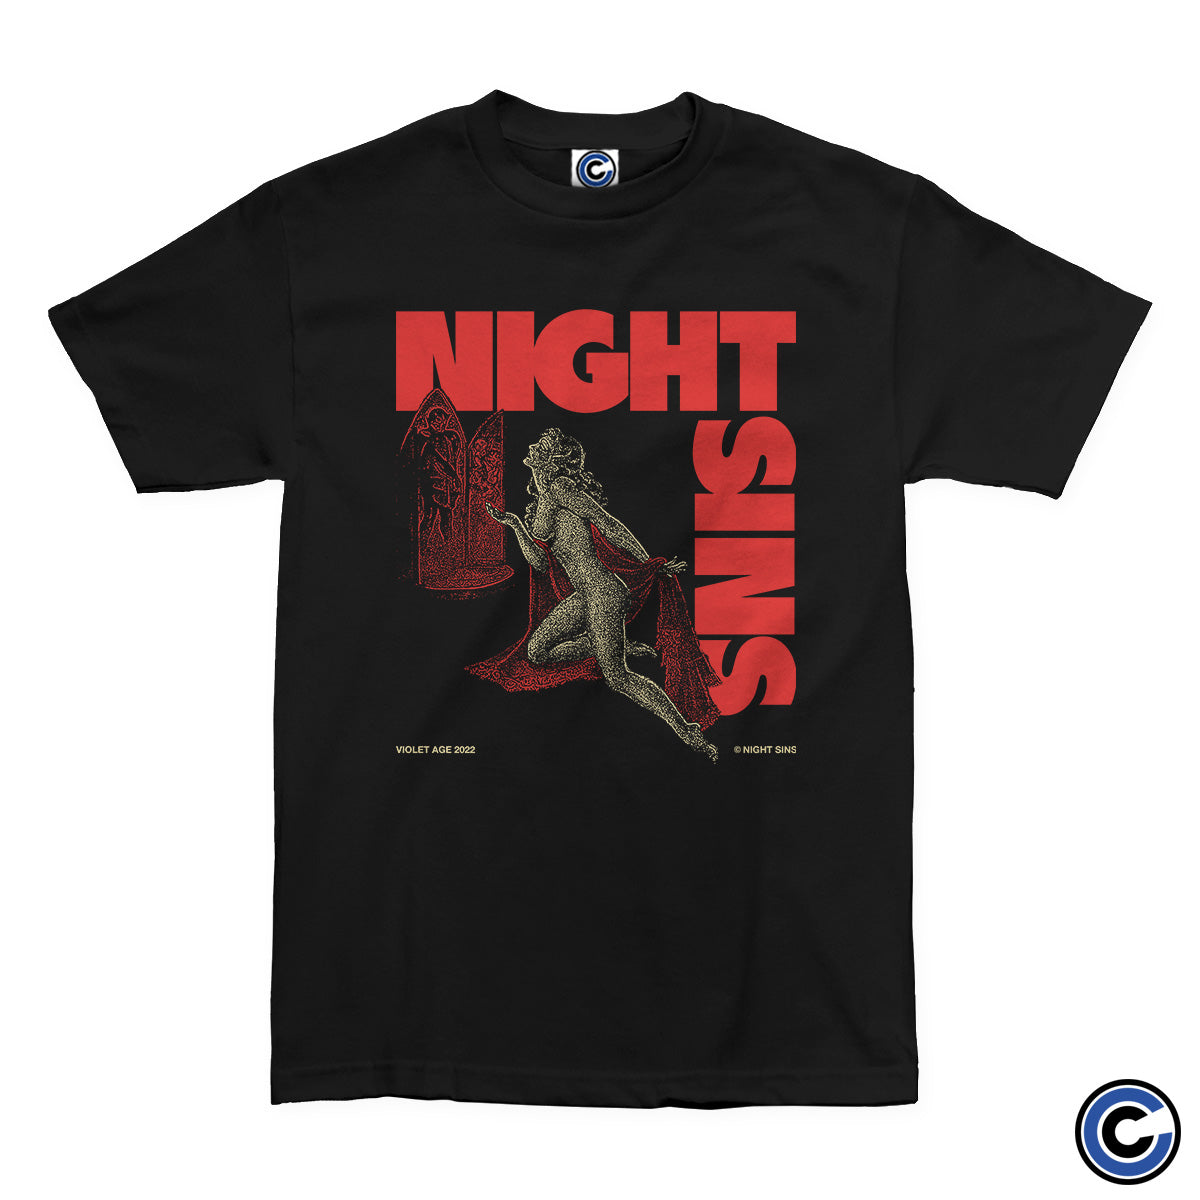 Night Sins "Shrine" Shirt